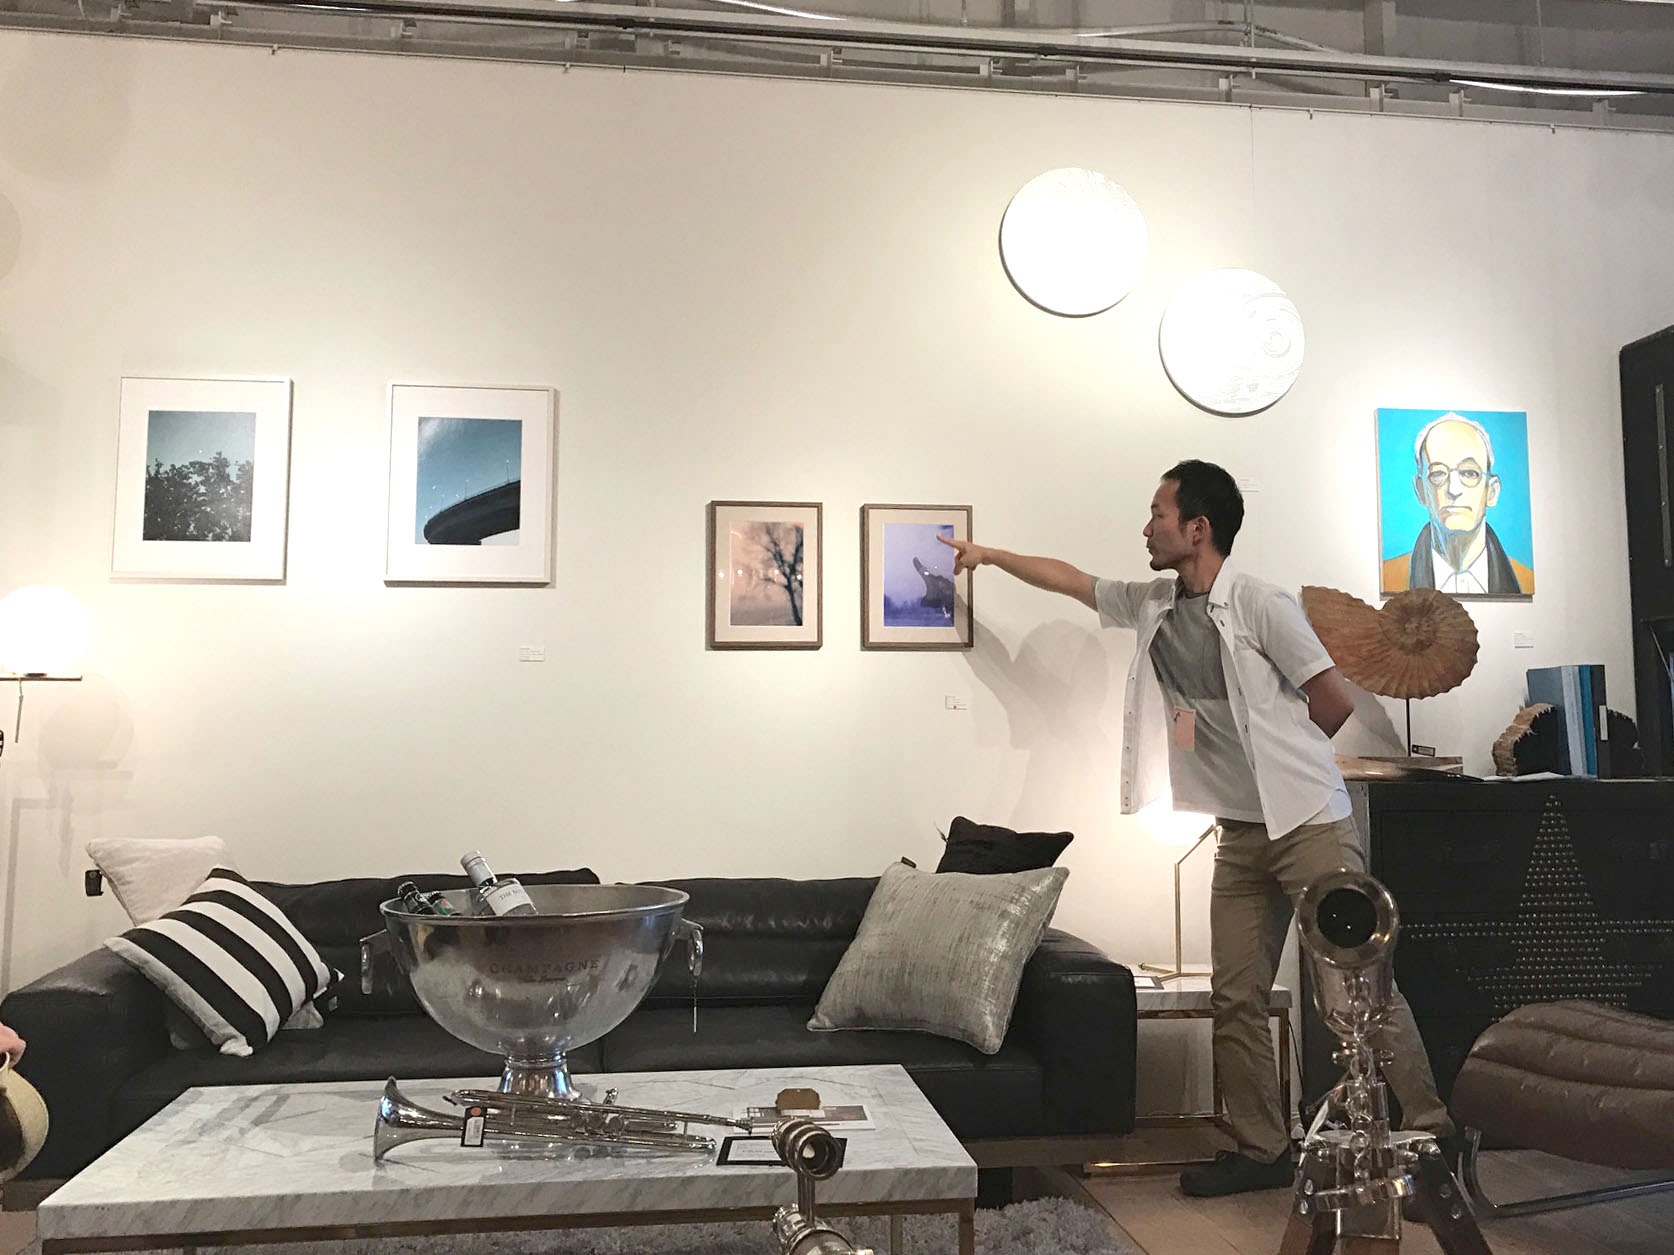 恵比寿のインテリアショップASPLUNDにて行われた、アートコミュケーションランドリー小田川悠による対話型美術鑑賞のアートイベント